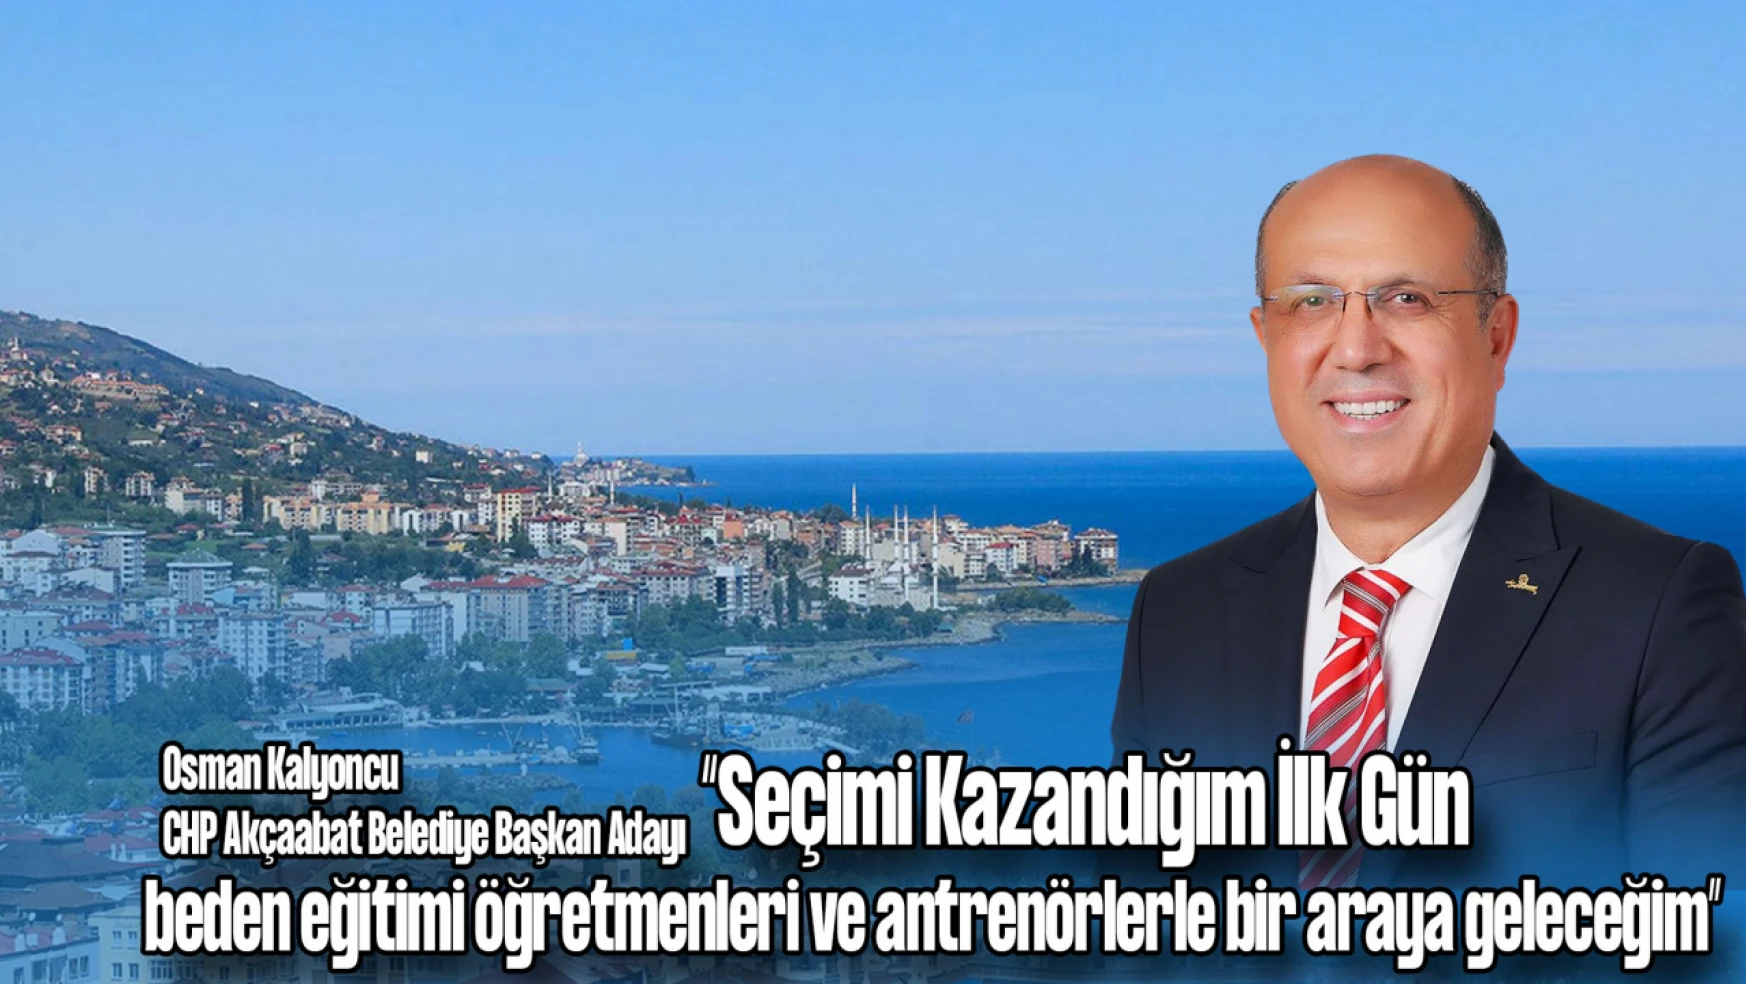 CHP Akçaabat Belediye Başkan Adayı Osman Kalyoncu, Hentbolhaber'deydi!